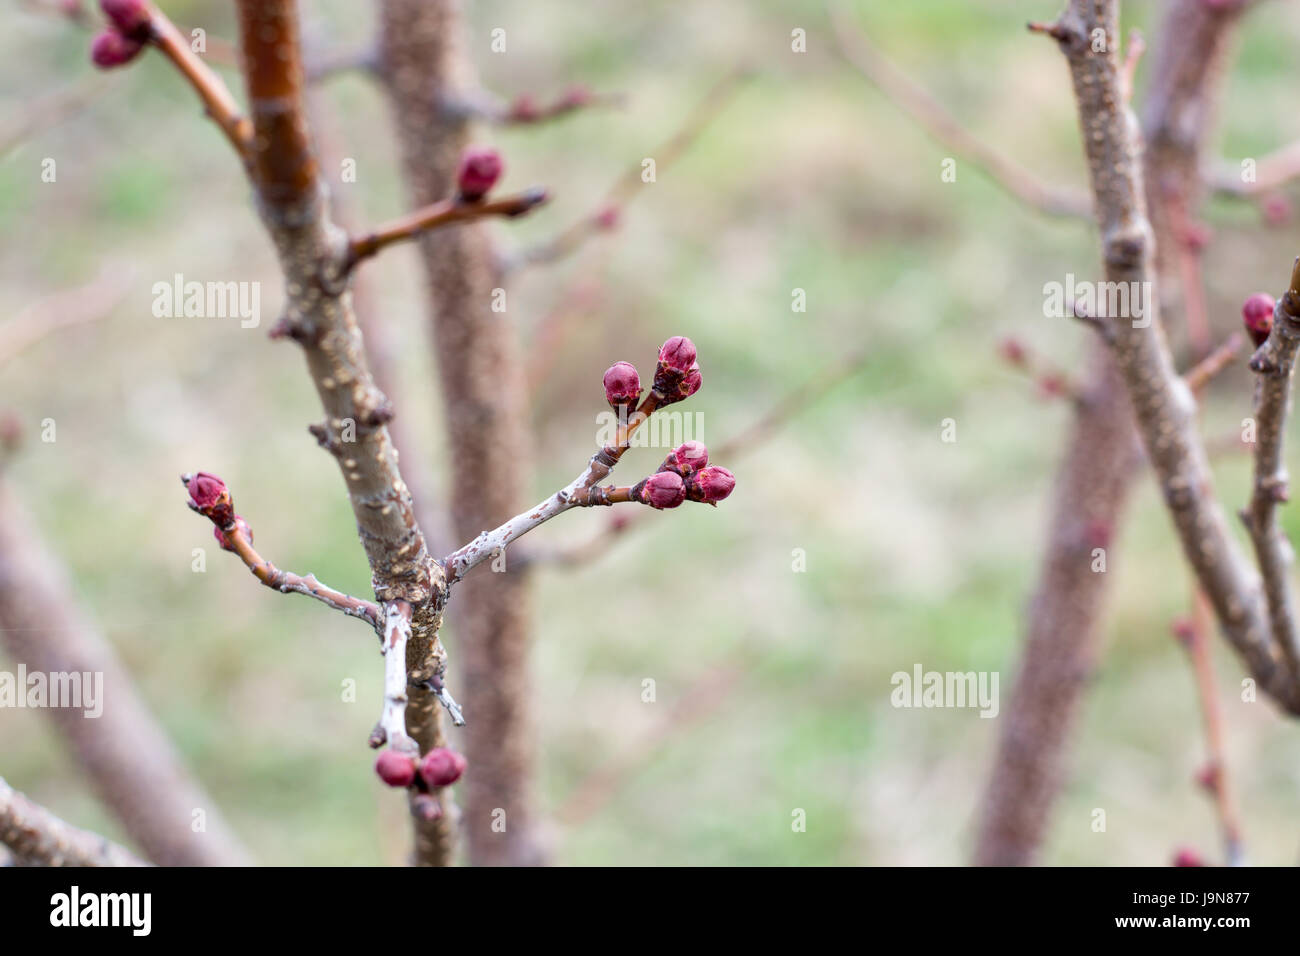 Aprikose Blütenknospe auf einem Ast Zweig mit Knospen. Blüte Baum über Natur Hintergrund. Frühling Blumen. Stockfoto